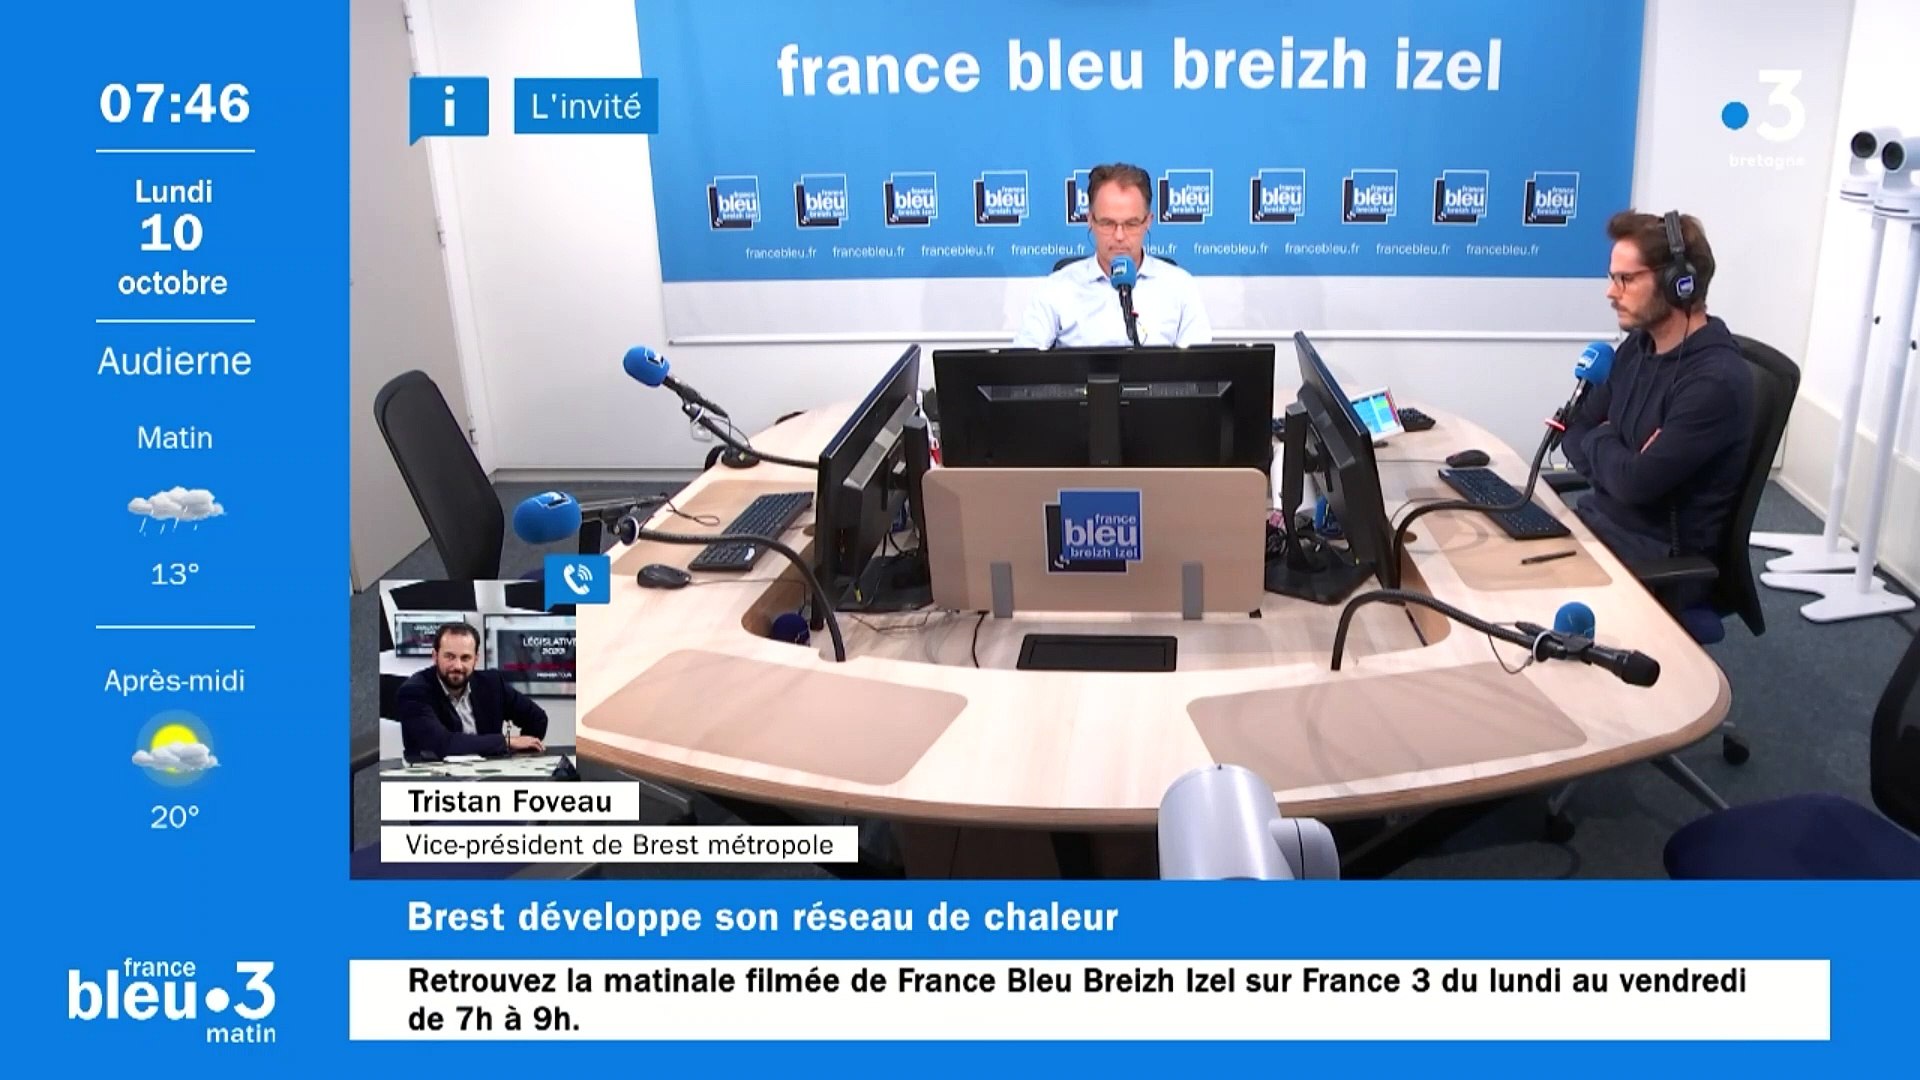 Le réseau de chaleur s'agrandit dans la métropole de Brest : Tristan Foveau  invité de France Bleu Breizh Izel - Vidéo Dailymotion